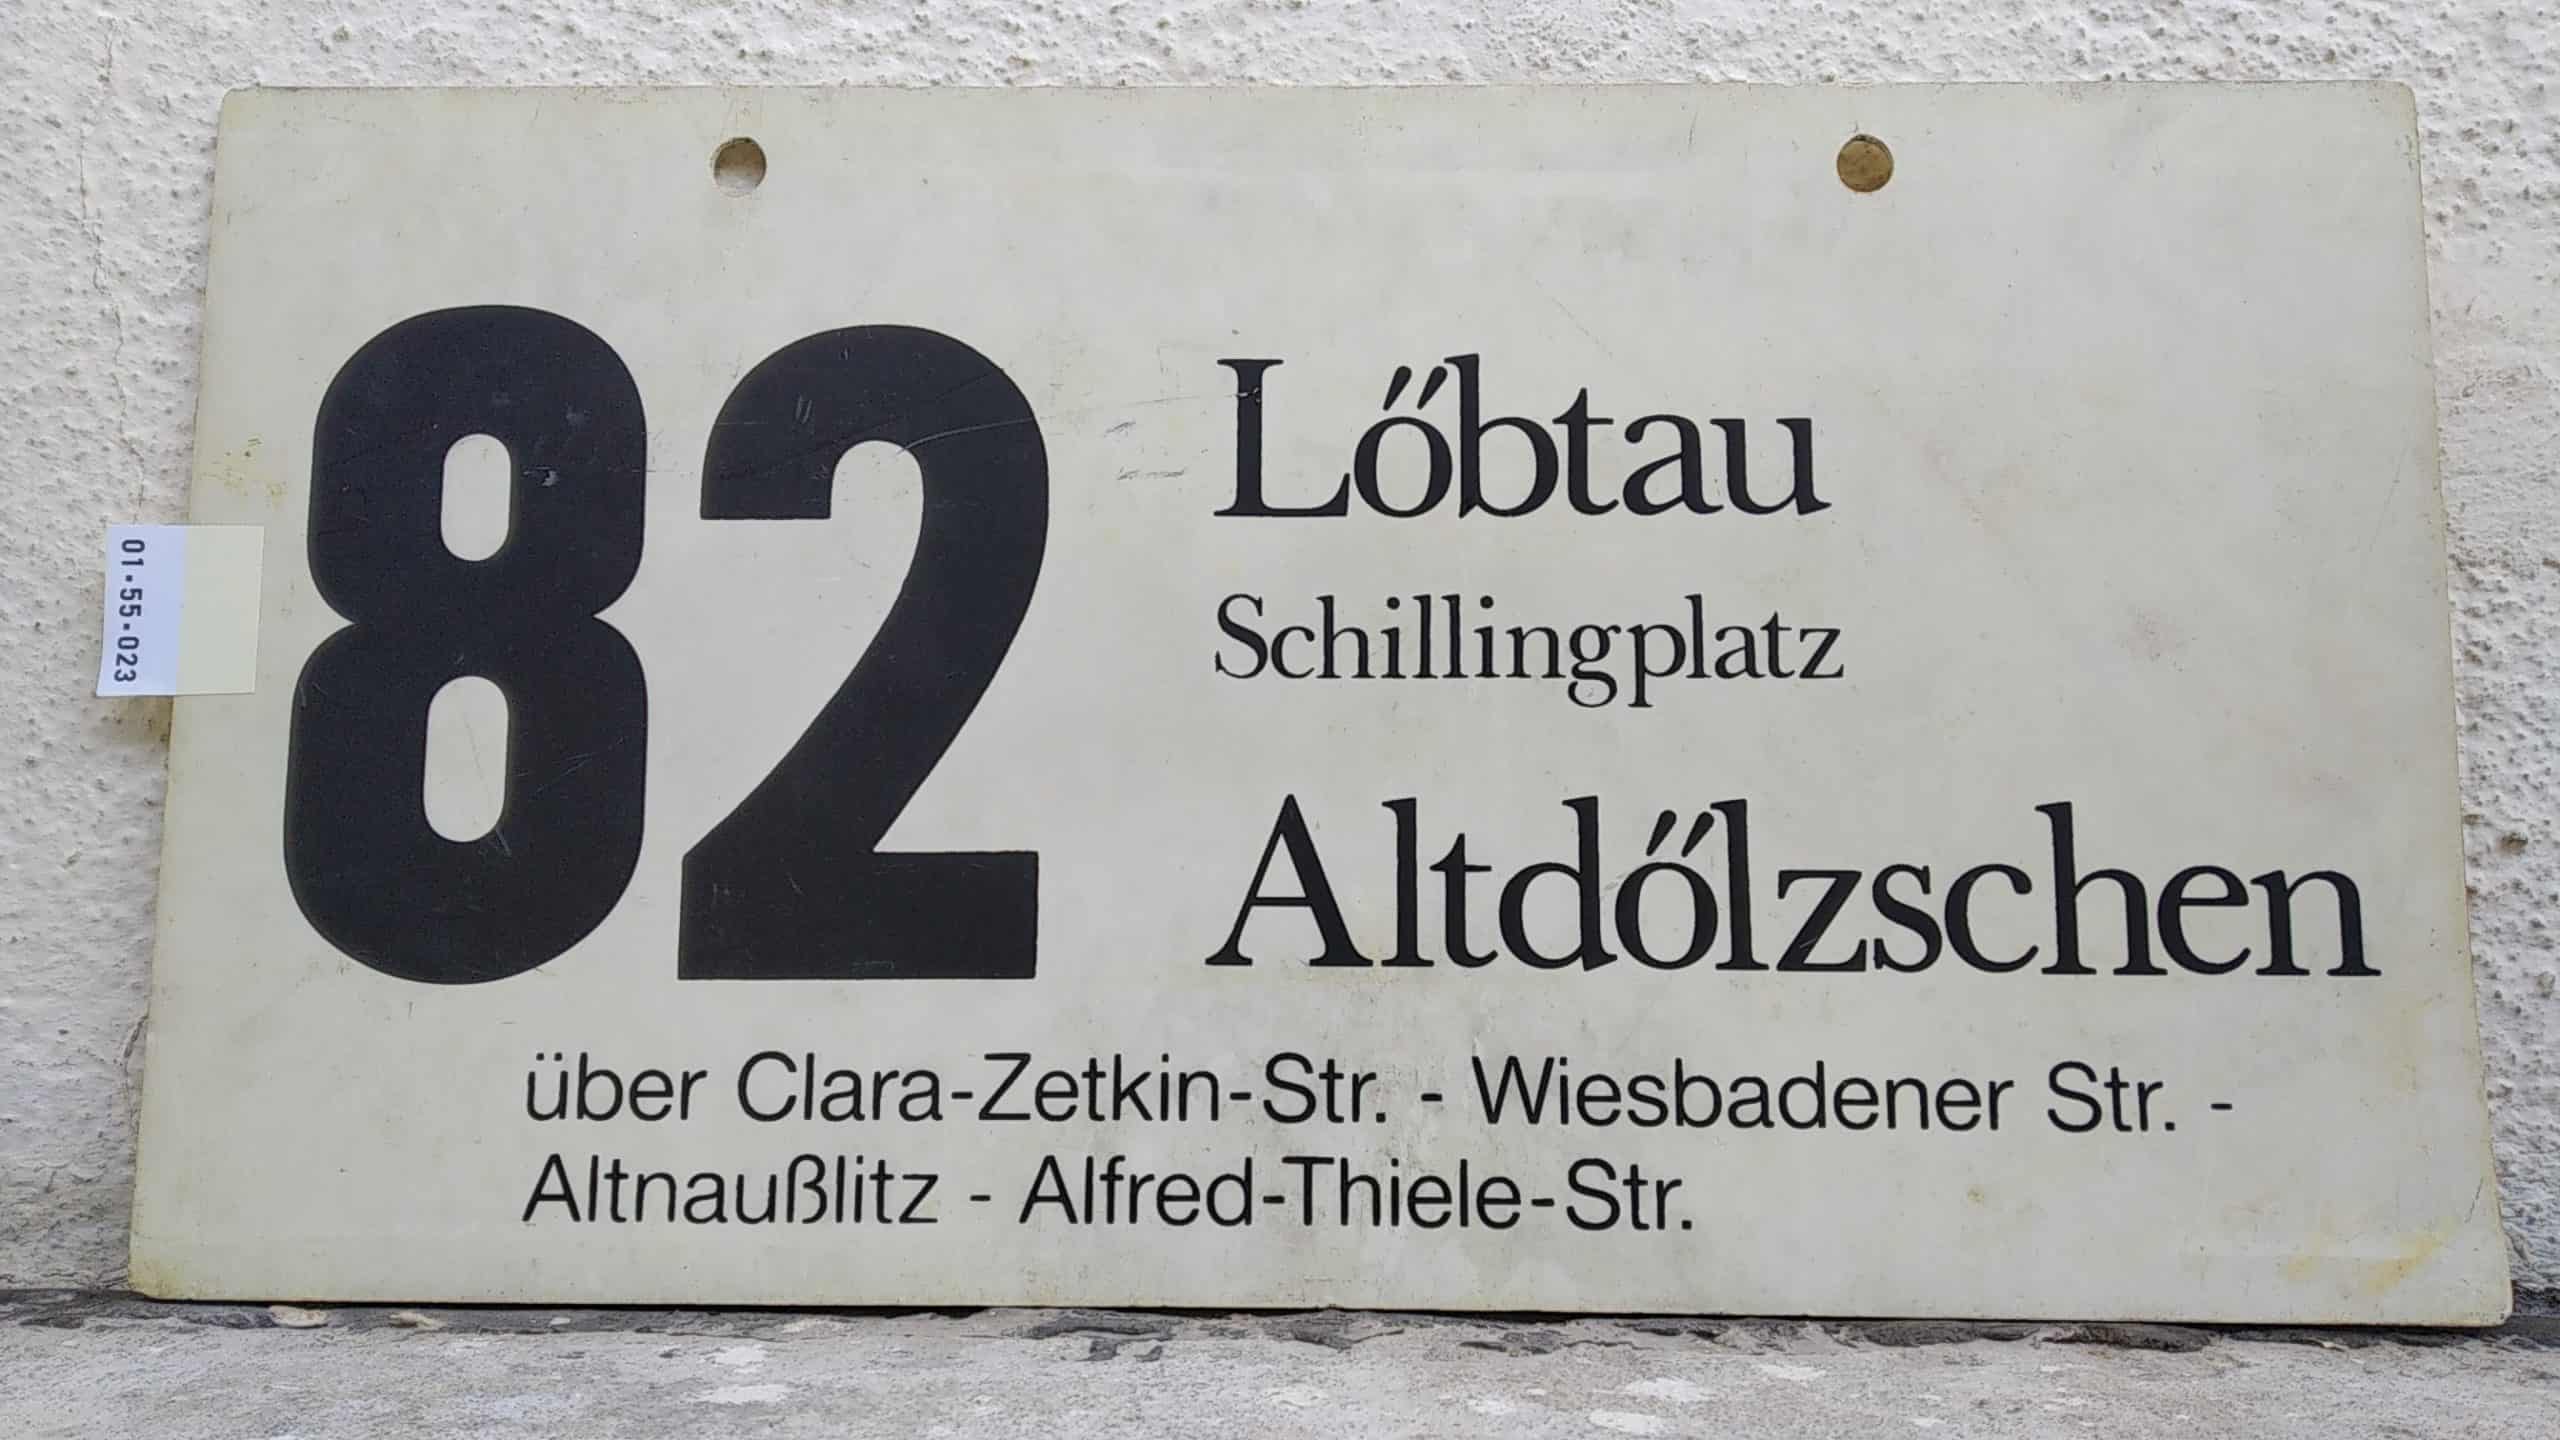 Ein seltenes Bus-Linienschild aus Dresden der Linie 82 von Löbtau Schillingplatz nach Altdölzschen